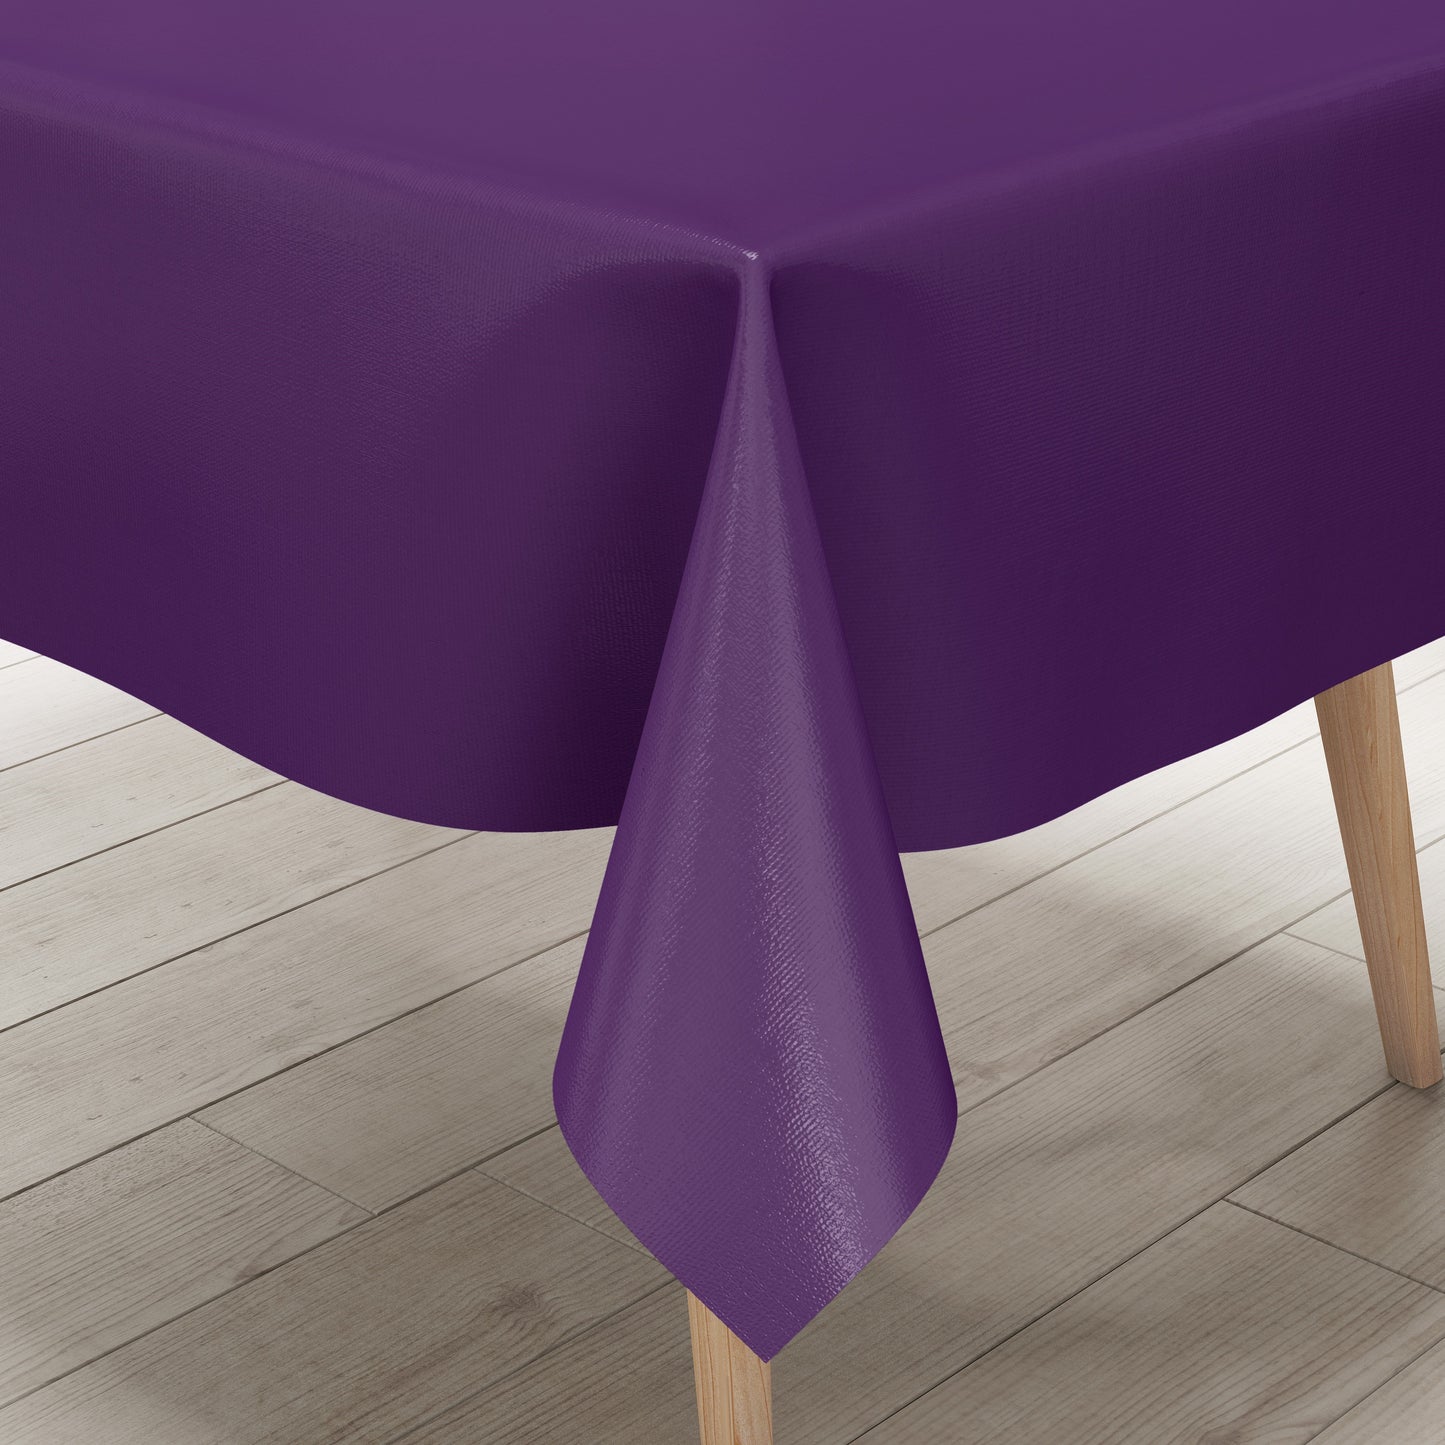 Wachstuch Tischdecke uni 17 einfarbig unifarben lila eckig rund oval